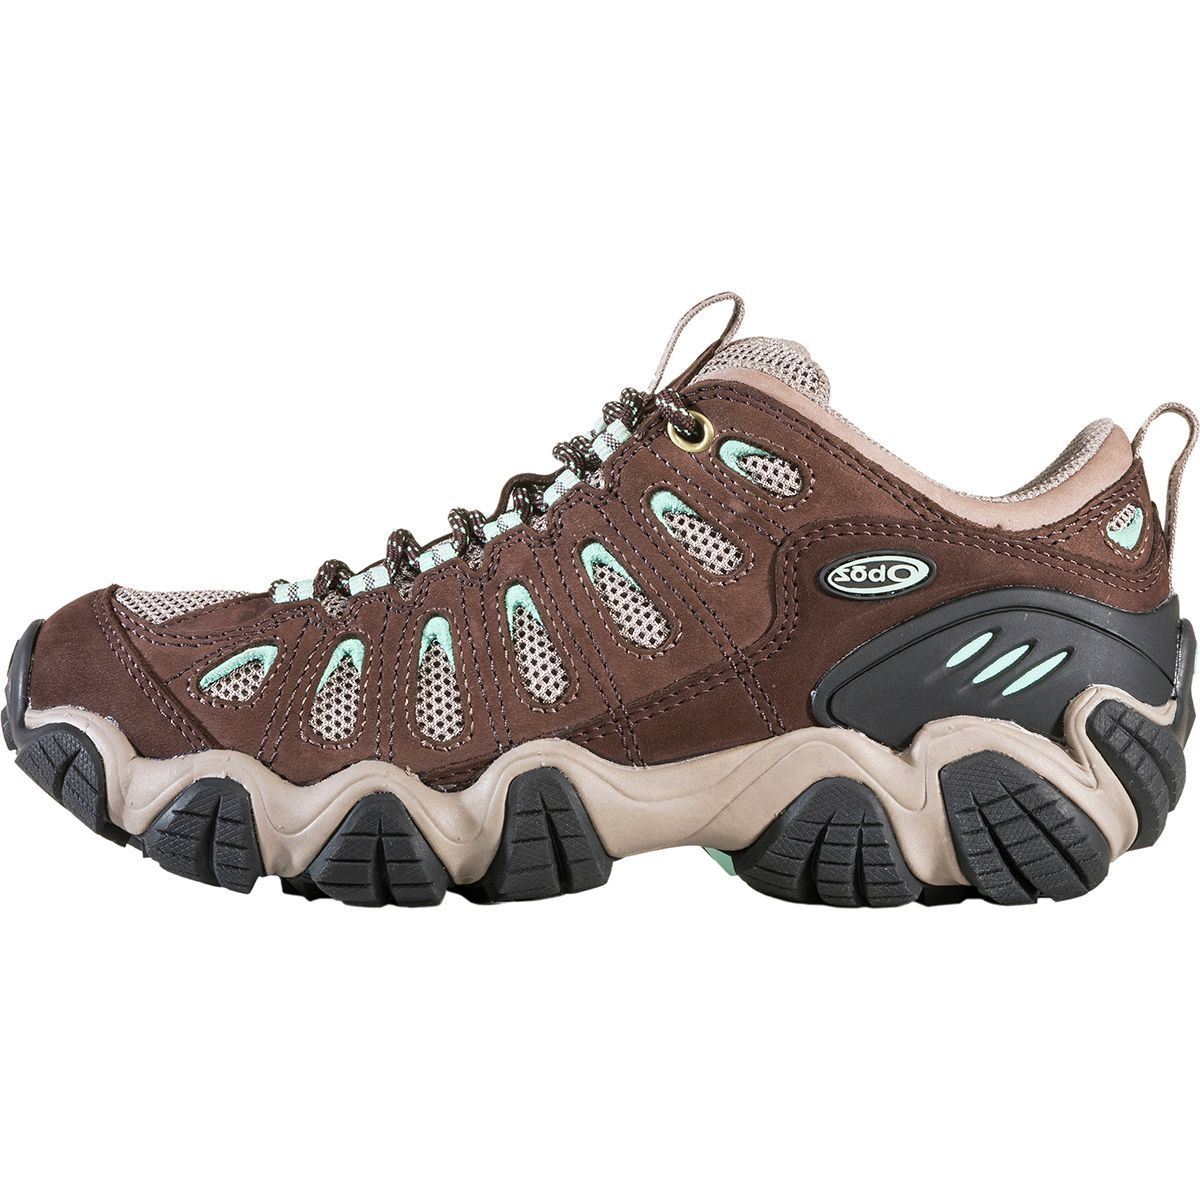 Oboz Sawtooth Hiking Shoe - Women's